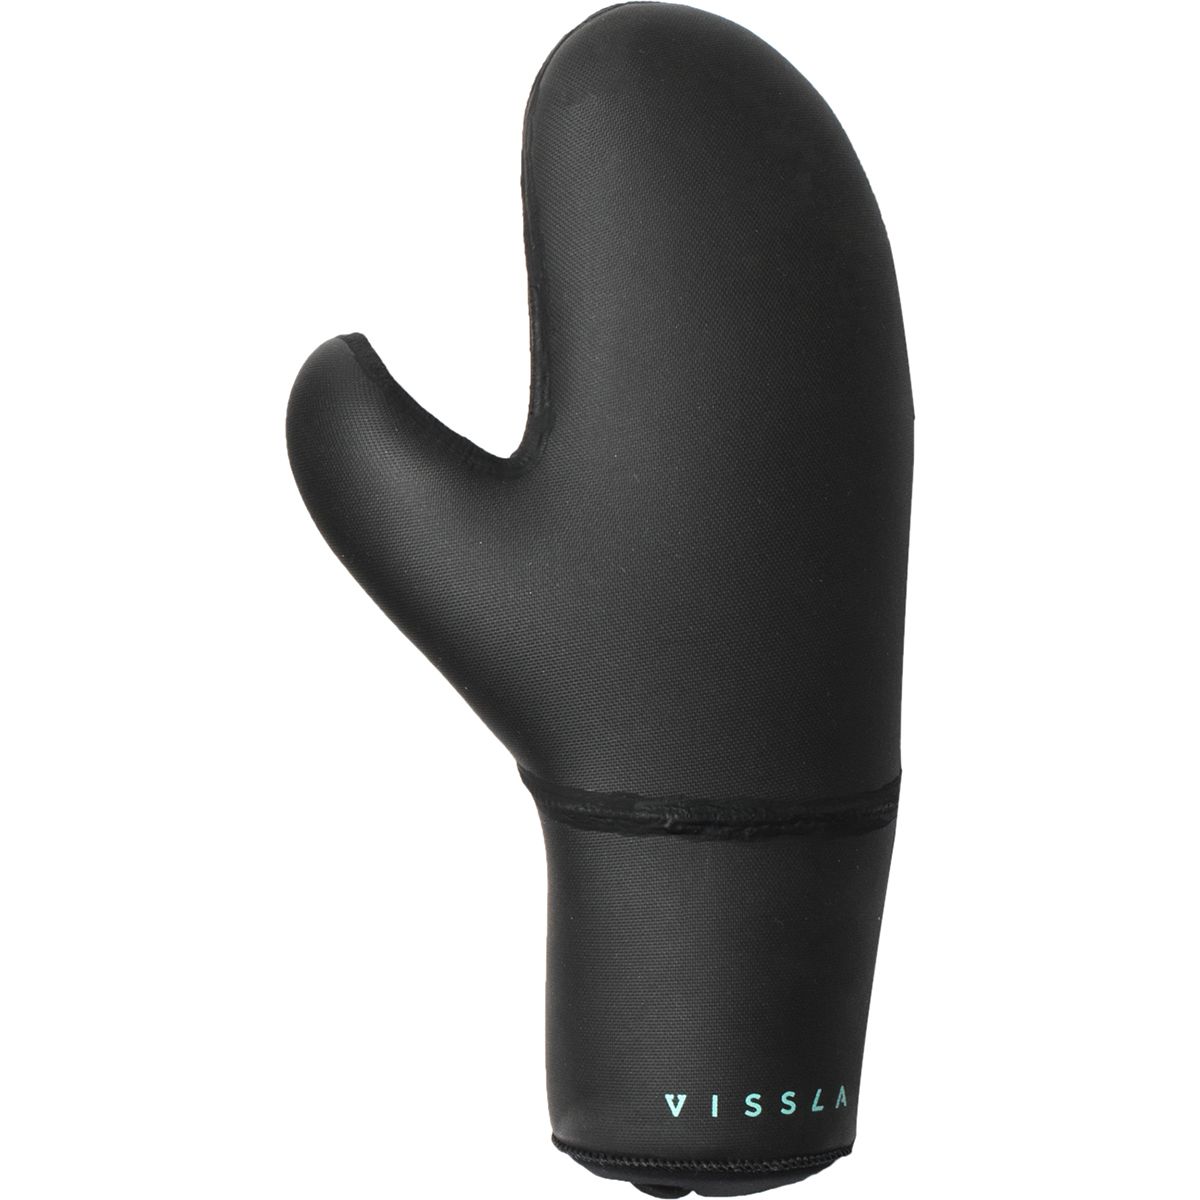 7mm Vissla Seven Seas mittens/ wetsuit gloves 